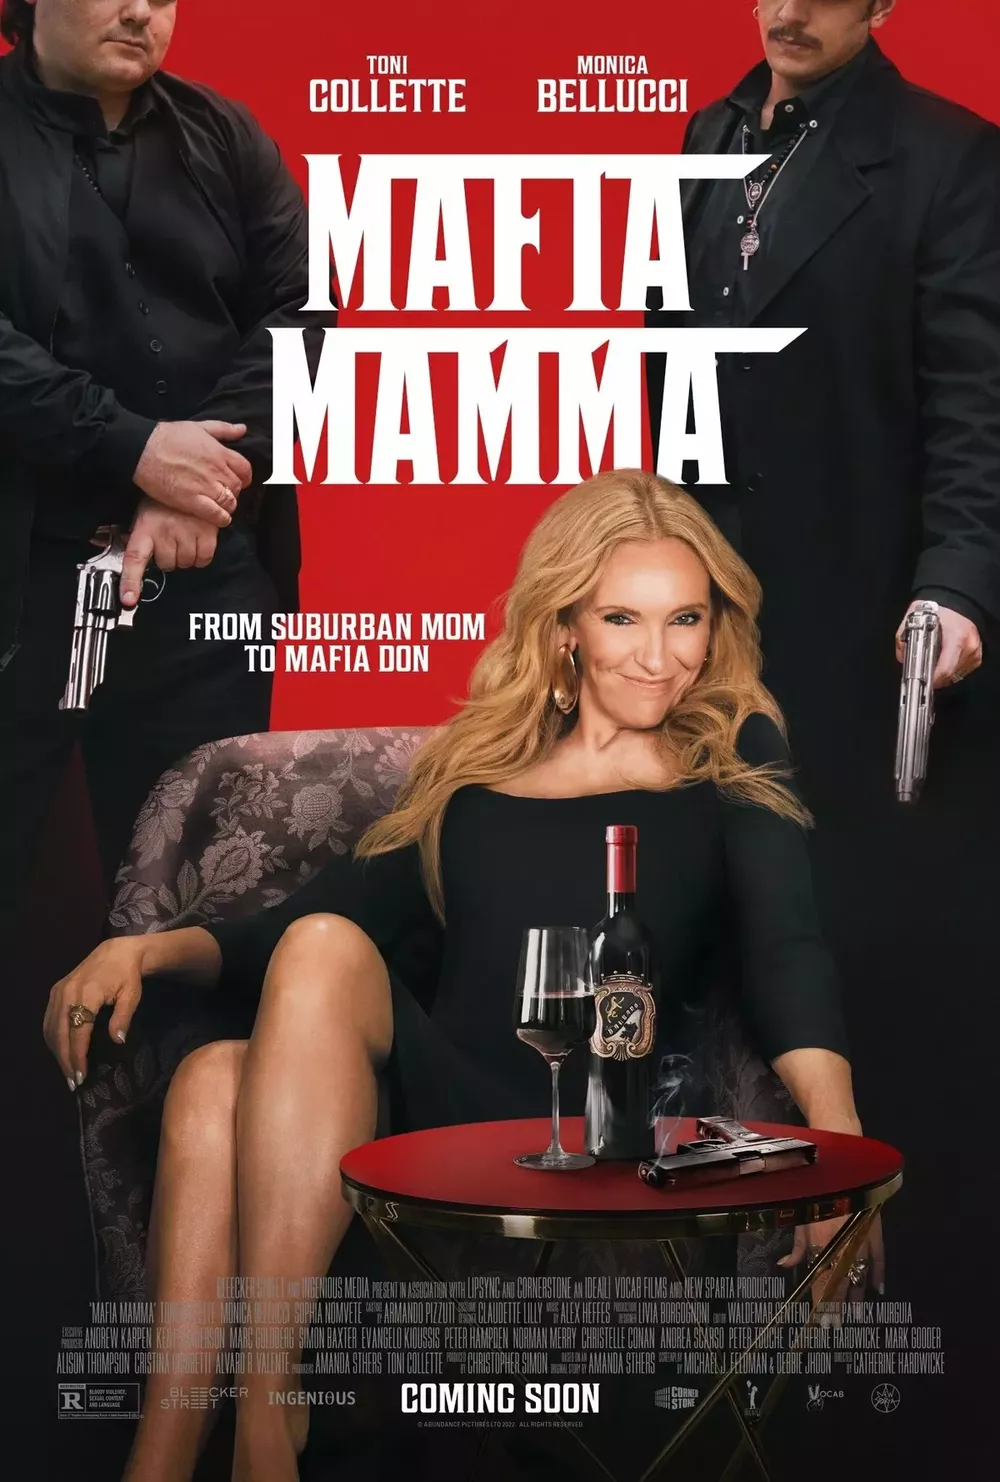 Тони Коллетт и Моника Беллуччи воюют с итальянской мафией в трейлере новой криминальной комедии